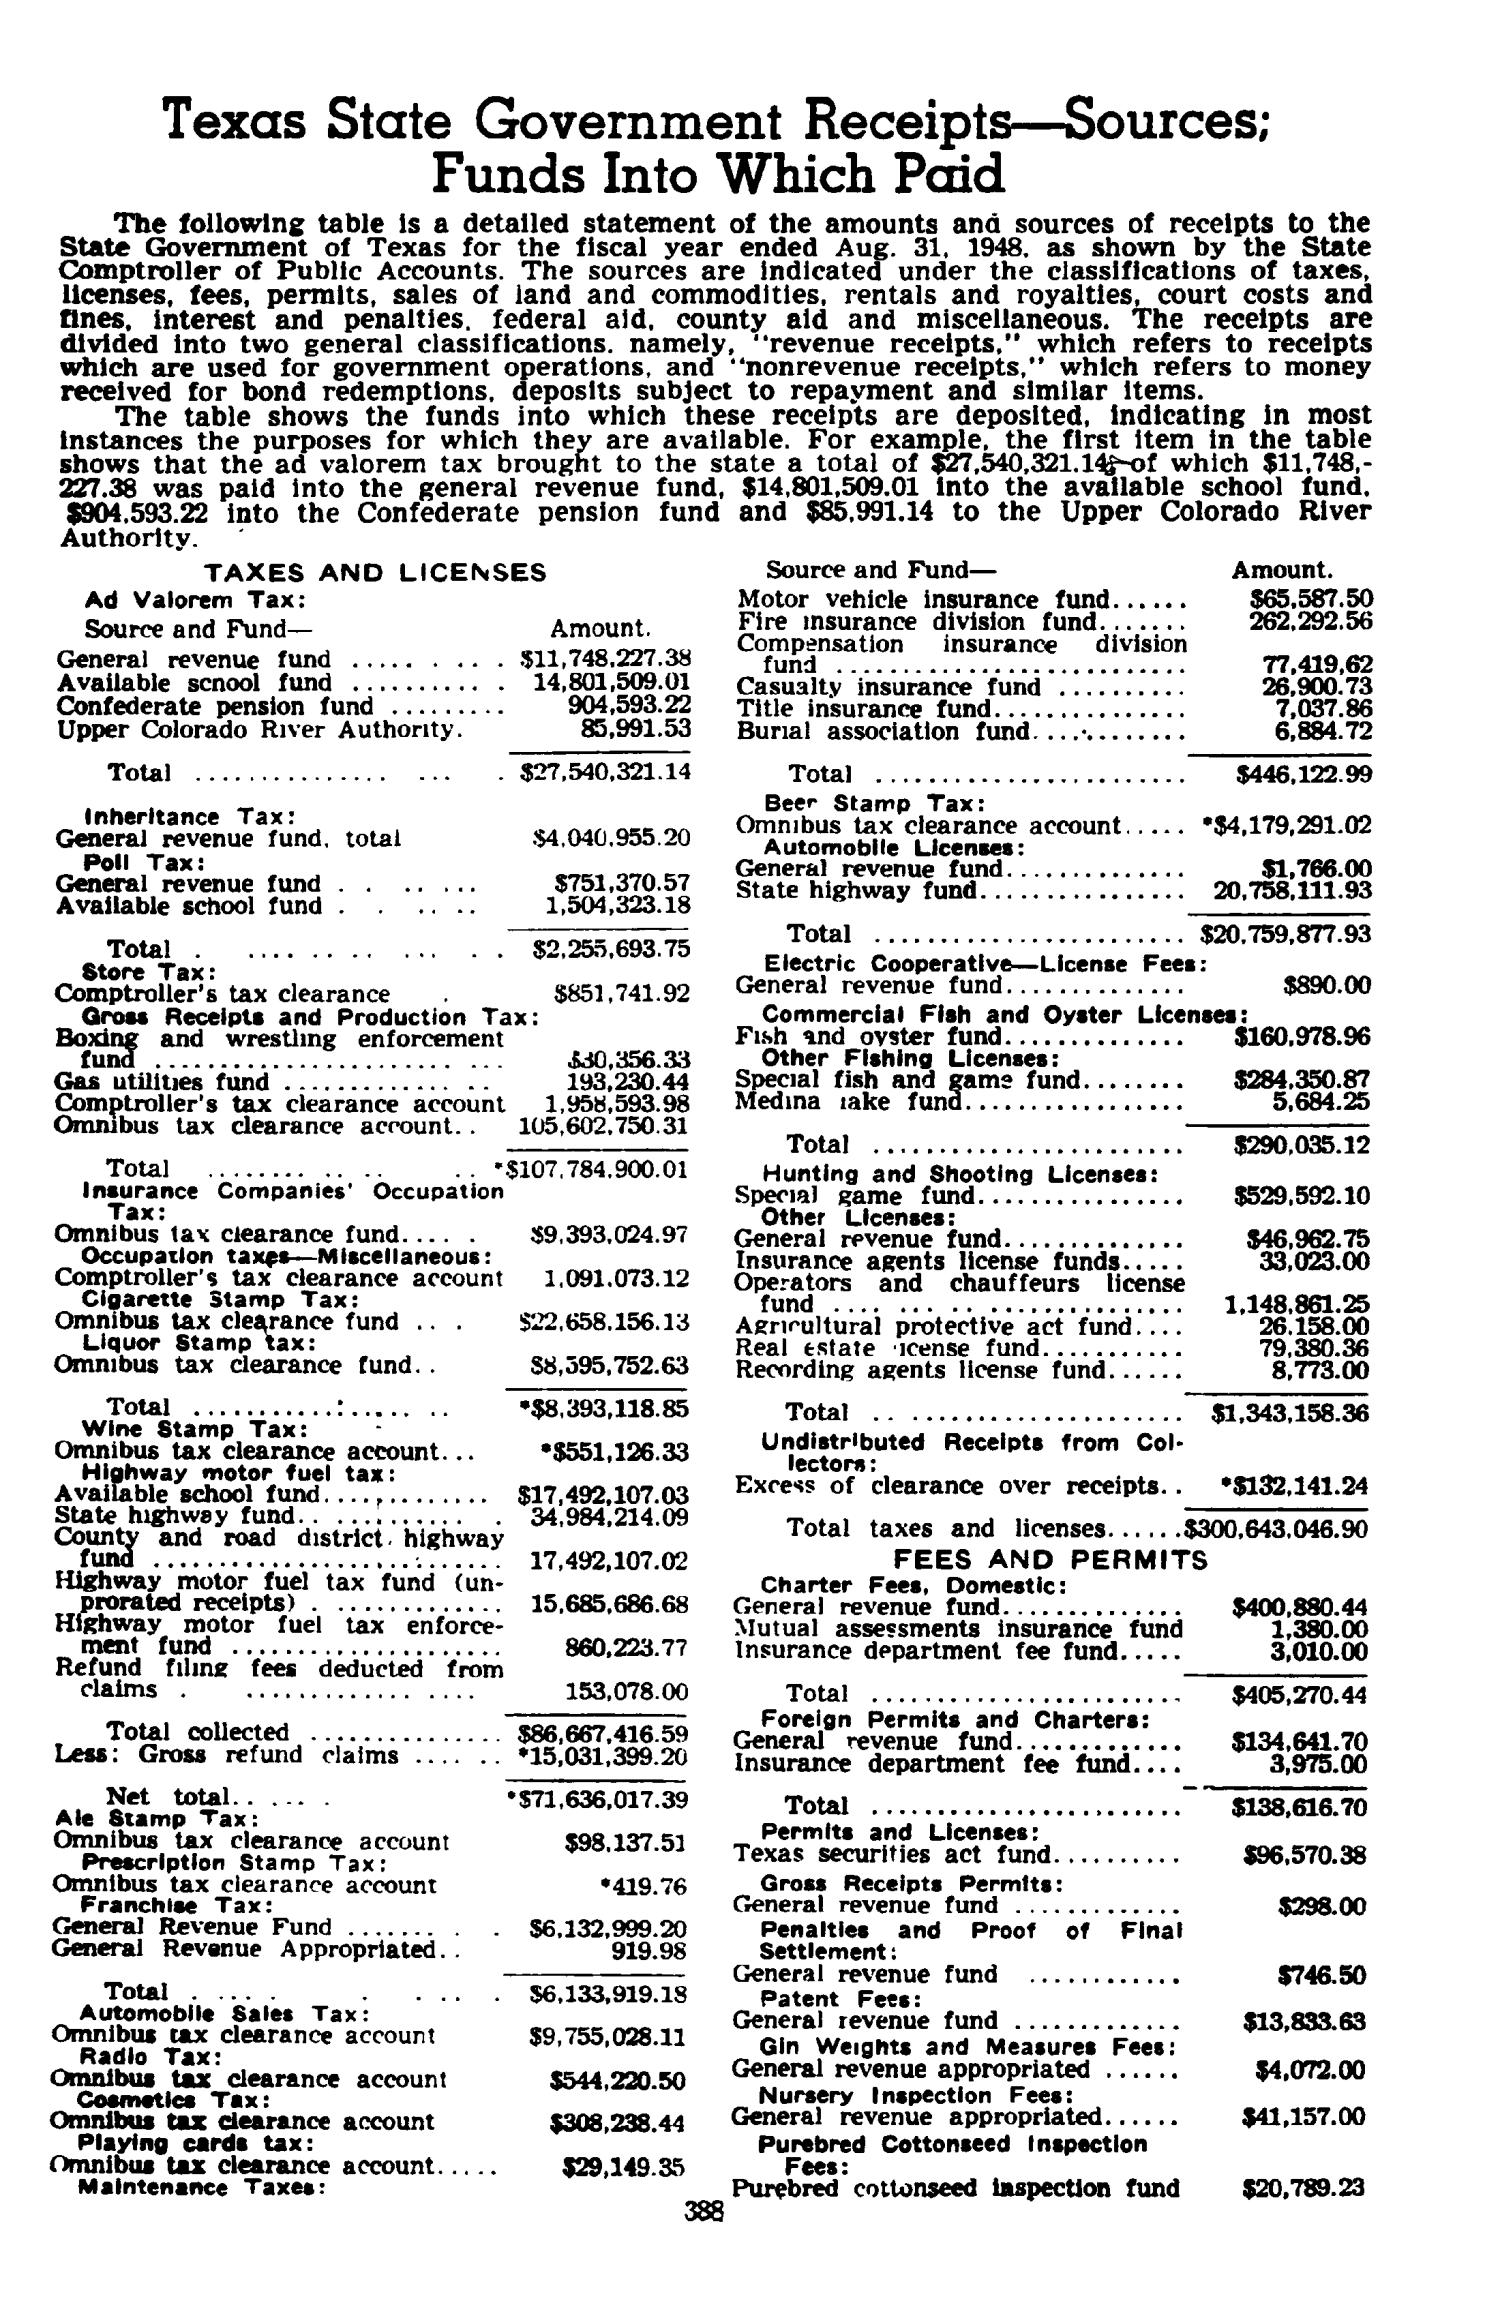 Texas Almanac, 1949-1950
                                                
                                                    388
                                                